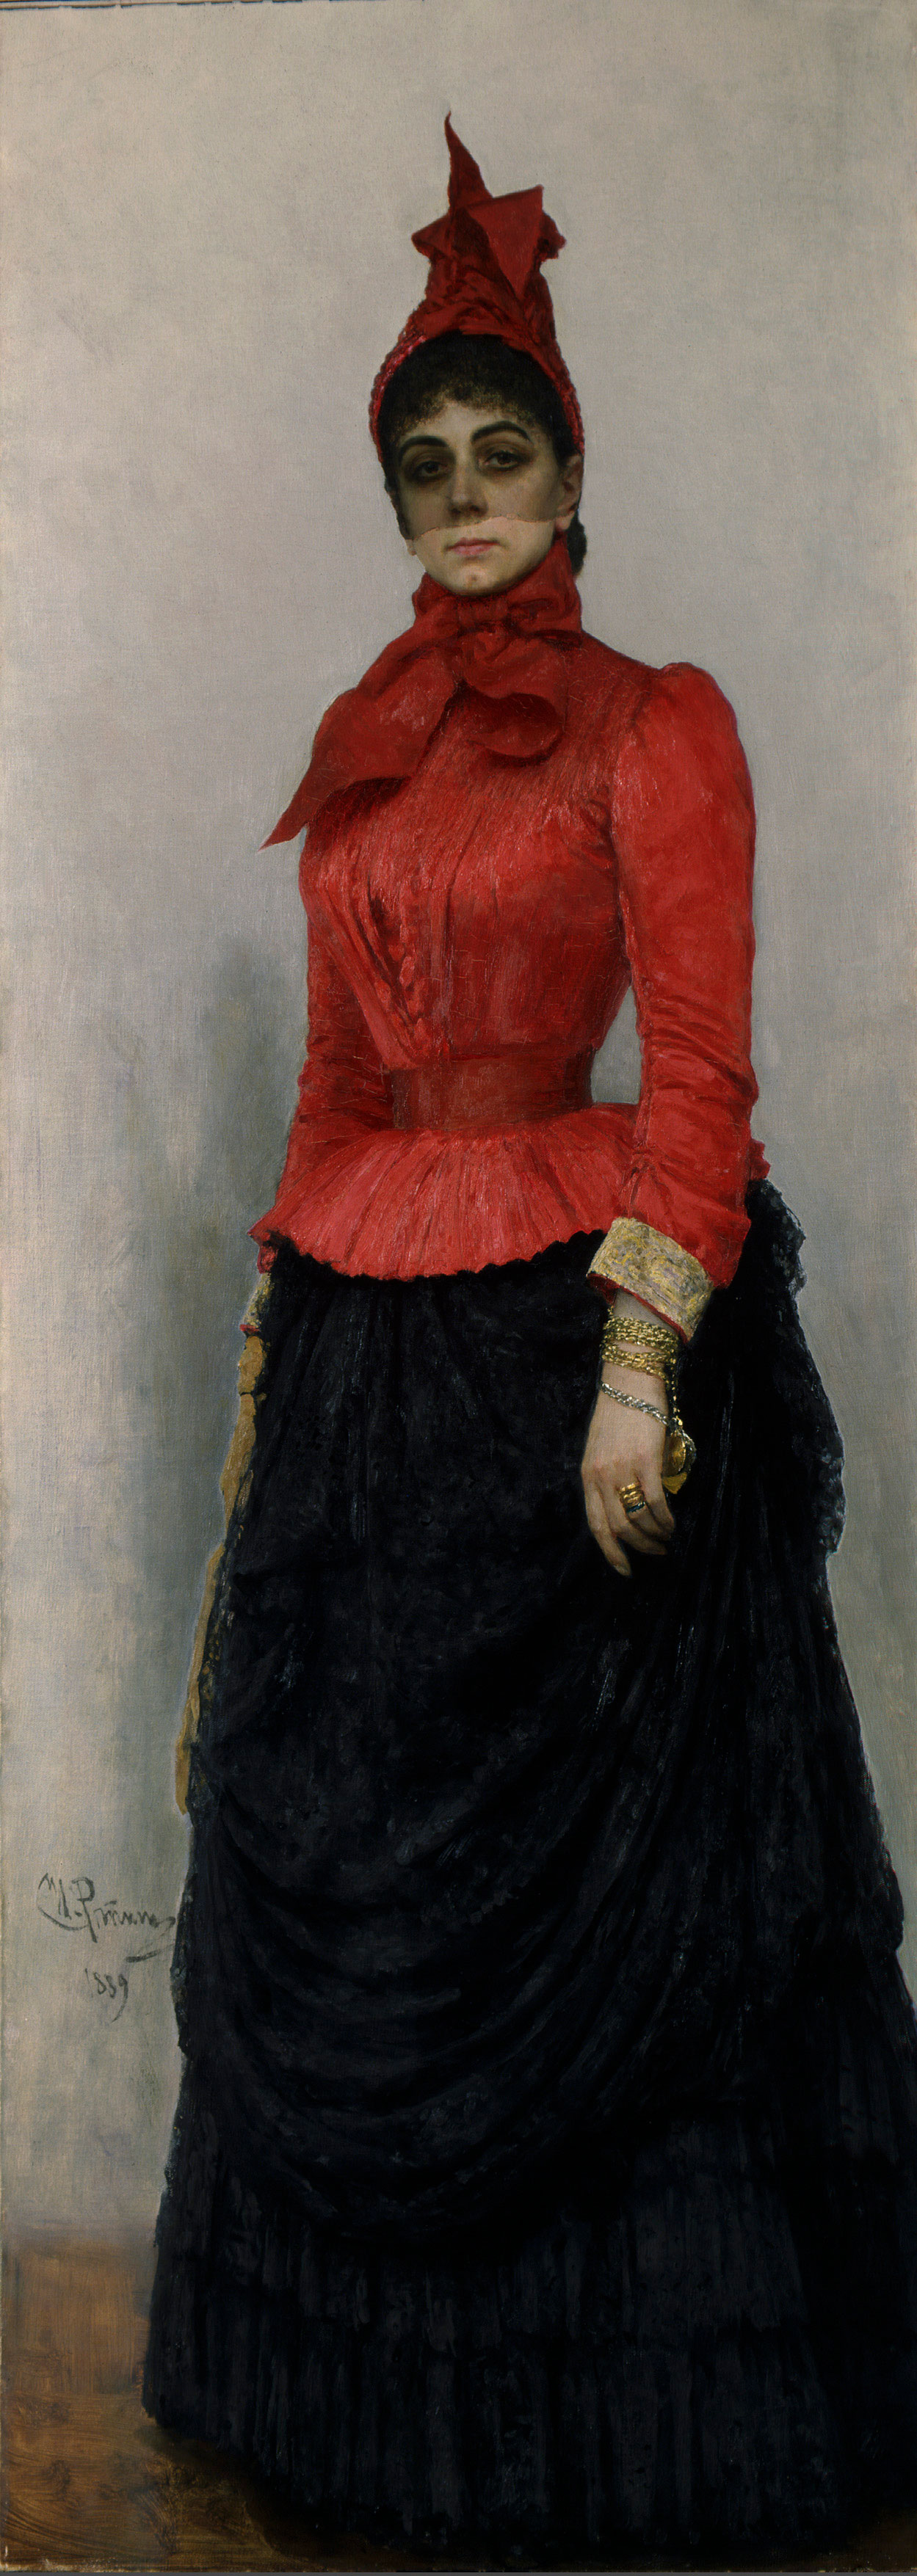 Ilia Repin: Baroness Varvara Ikskul von Hildenbandt, 1889